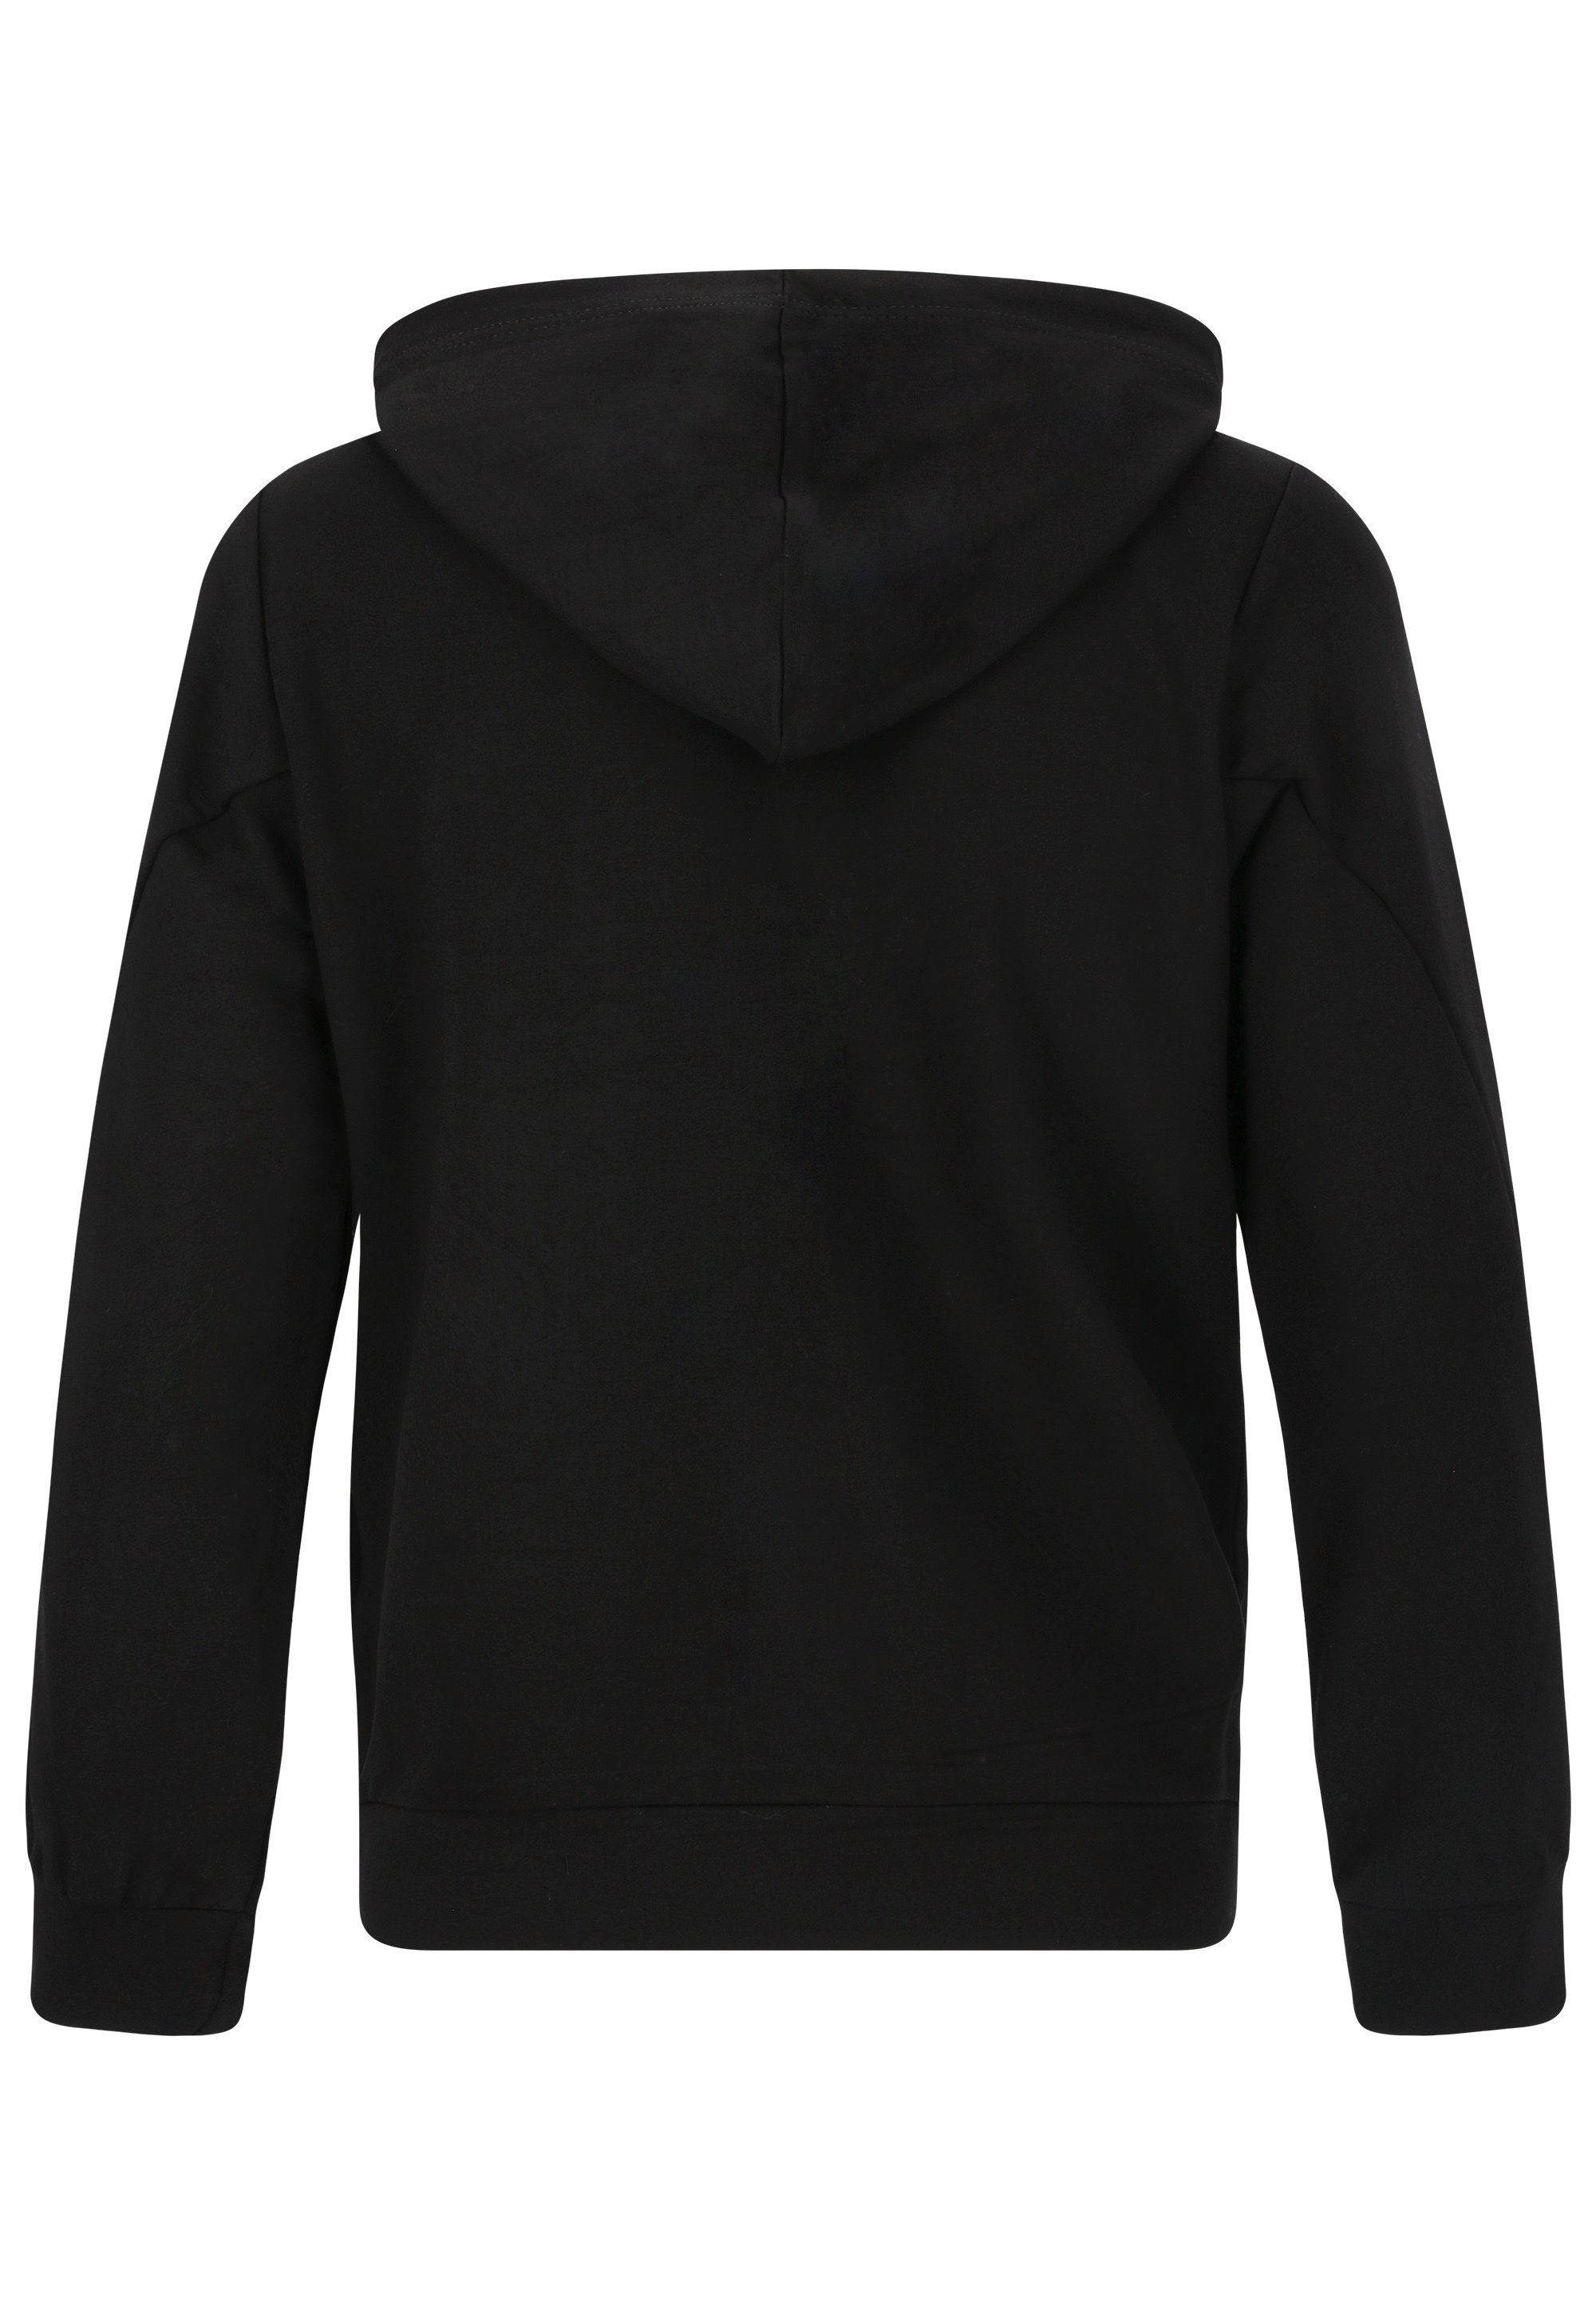 ENDURANCE Sweatshirt schwarz Grovent Baumwoll-Touch mit